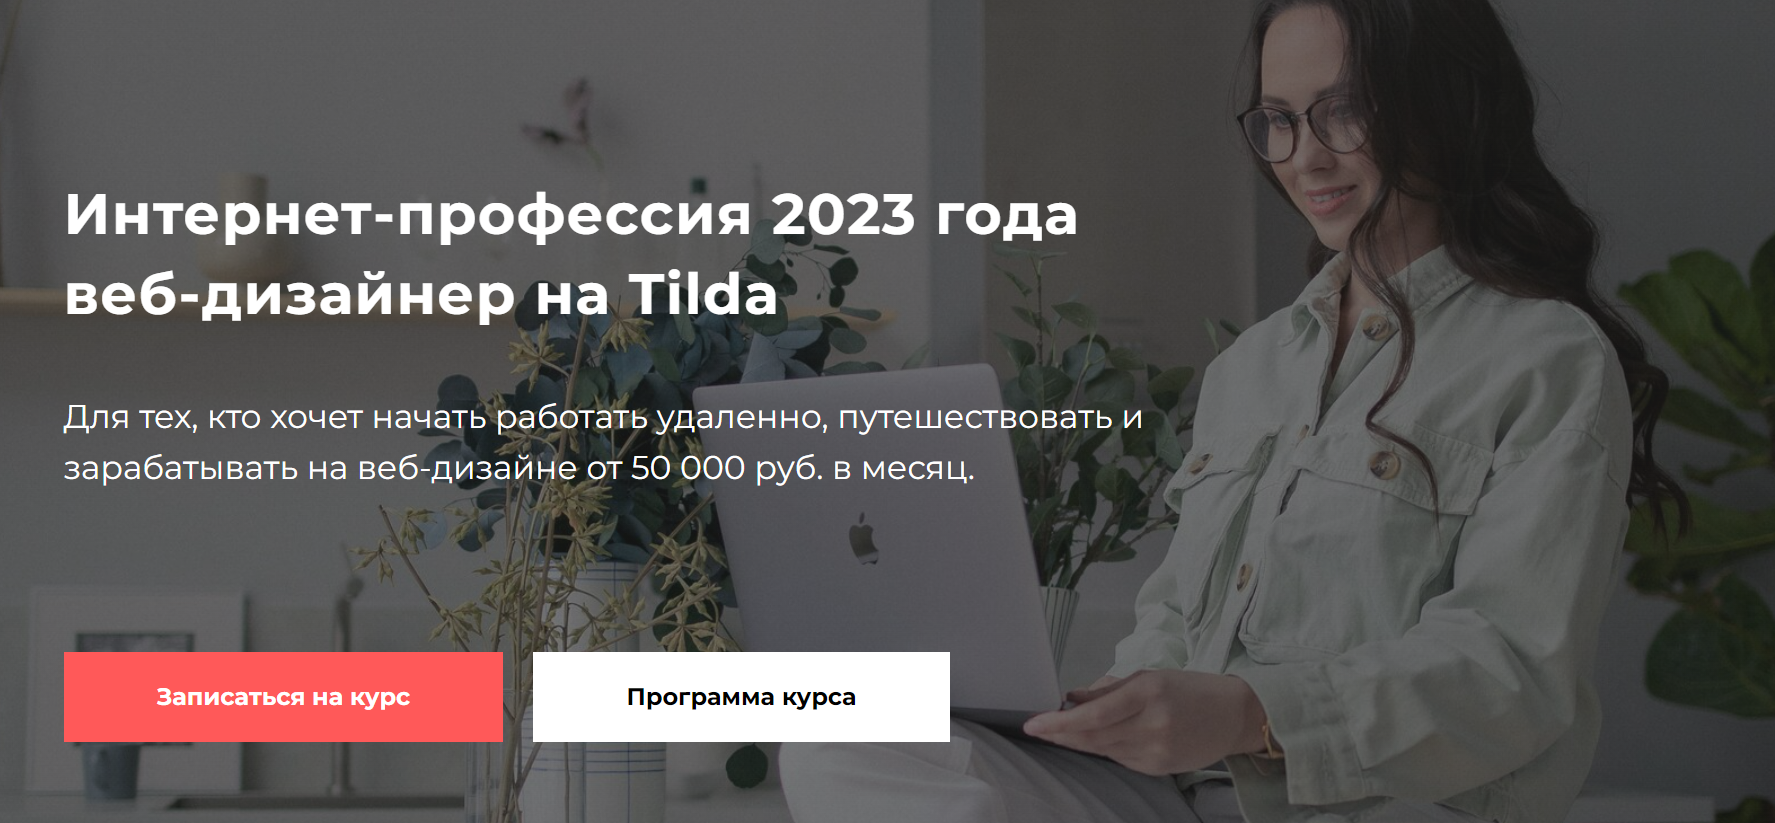 School.elizart с «Интернет-профессия 2023 года: веб-дизайнер на Tilda»